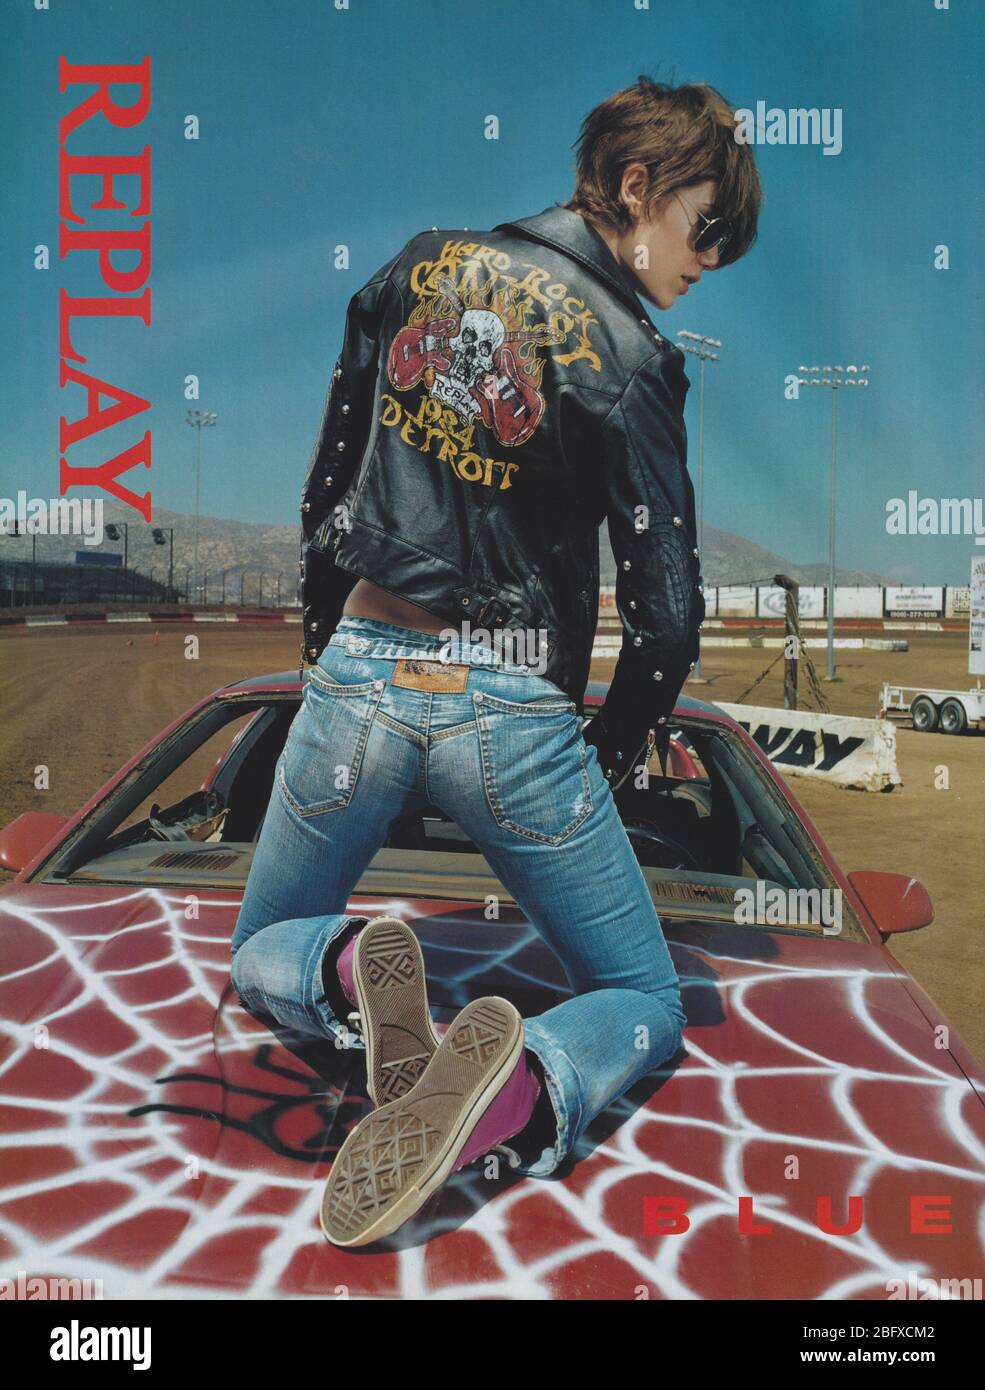 Poster Werbung Replay Denim, Casual Wear Jeans Marke in Magazin von 2004, Werbung, kreative Replay 2000s Anzeige Stockfoto